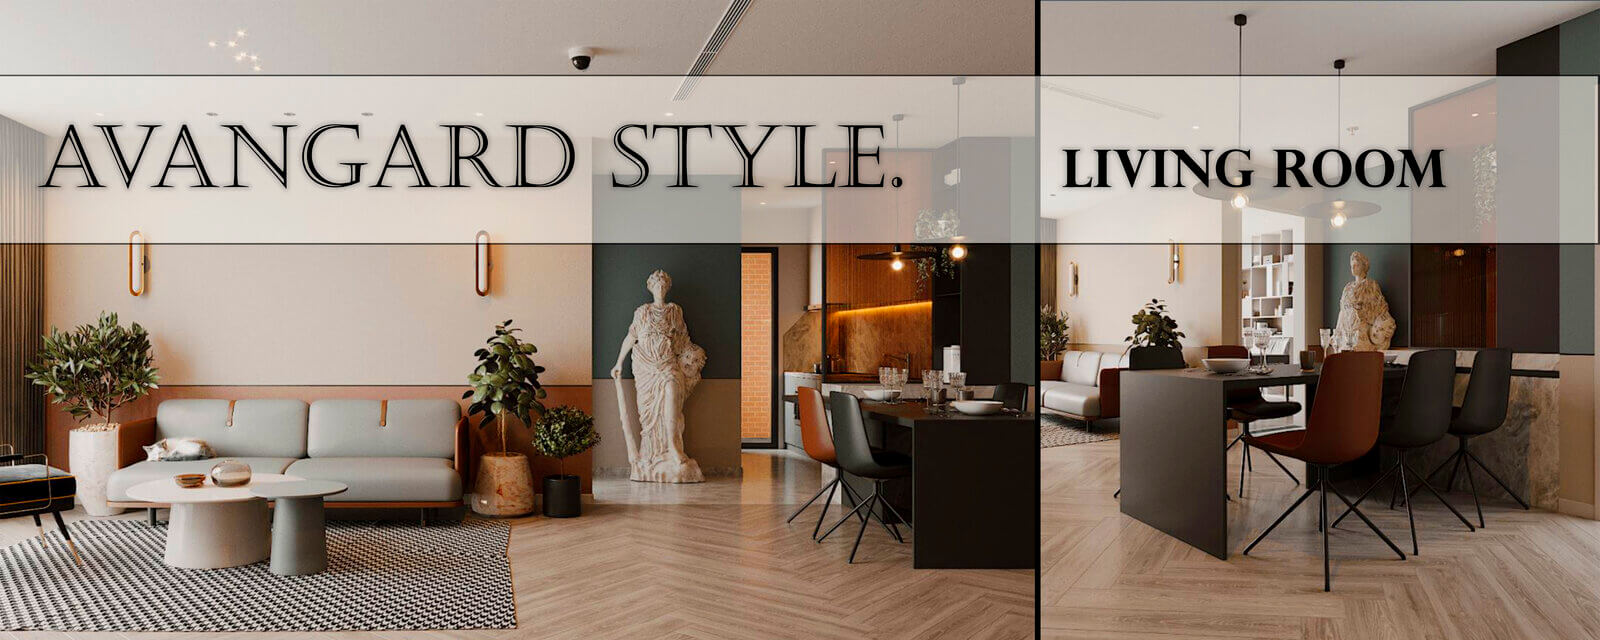 Avangarde Style | Living Room